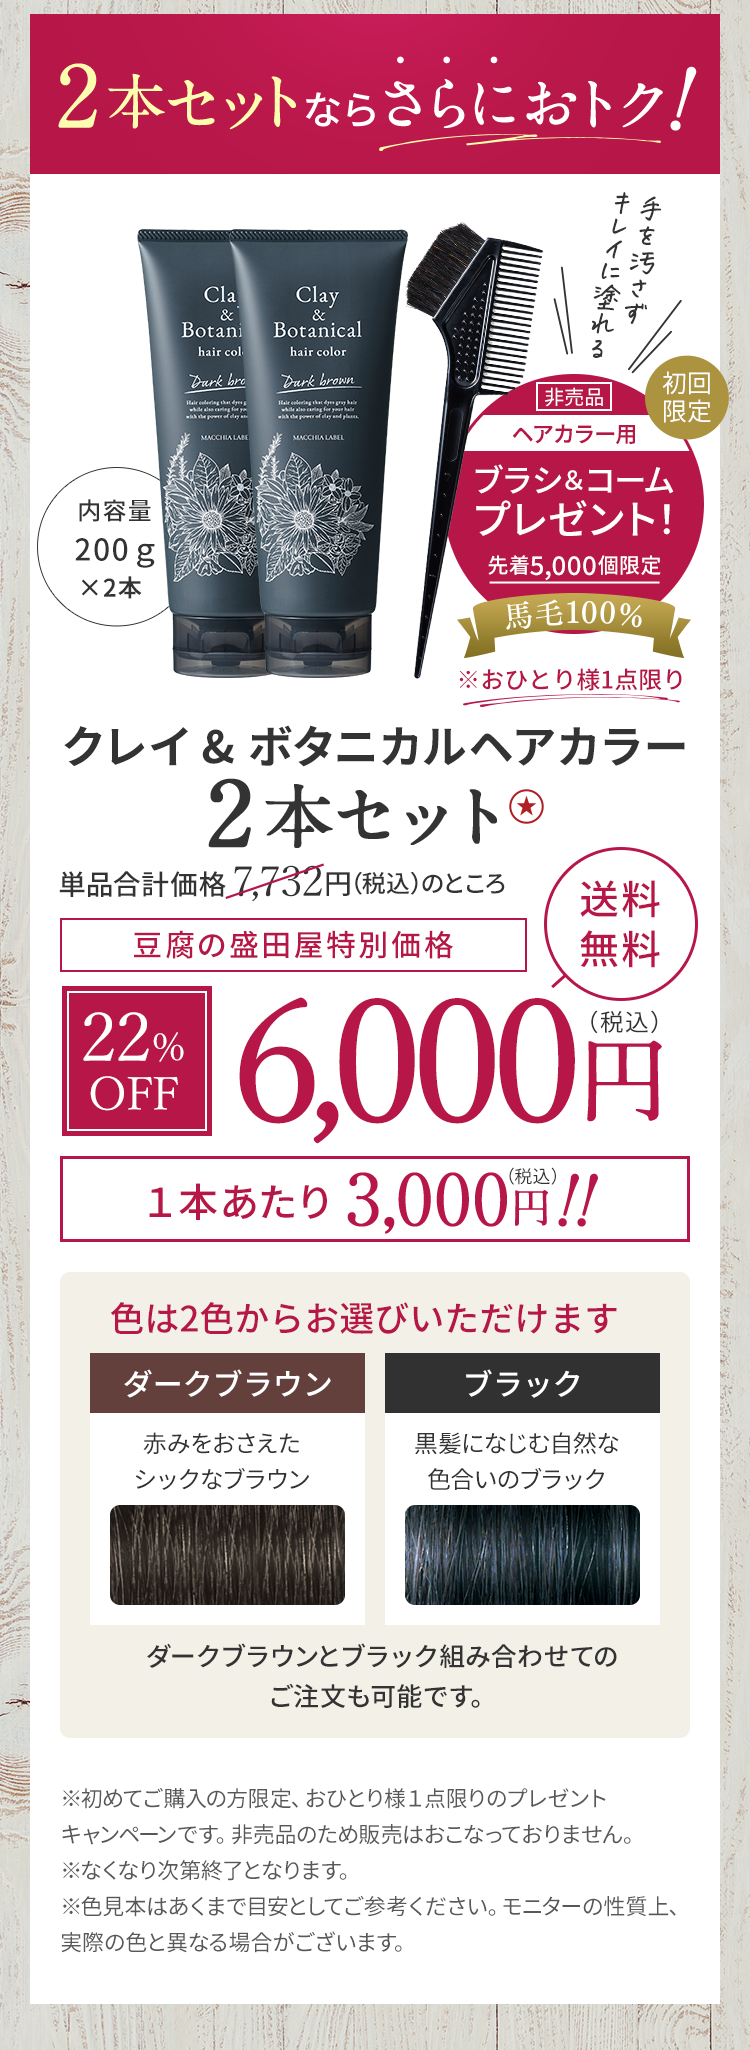 クレイ&ボタニカルヘアカラー2本セット 6,000円